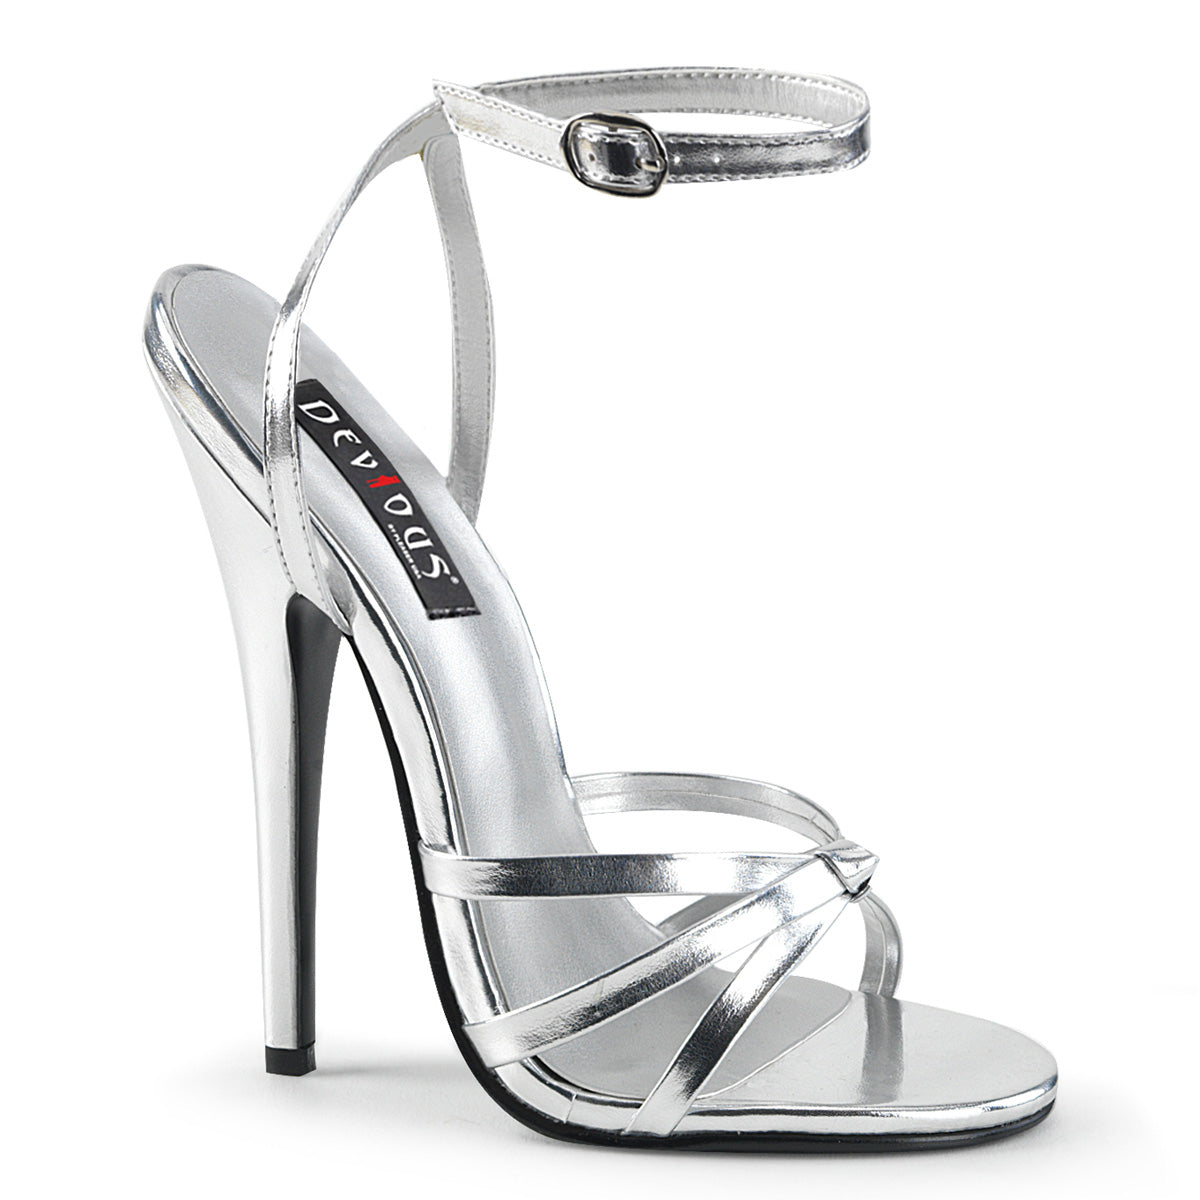 Devious Sandali da donna DOMINA-108 PU metallizzato in argento